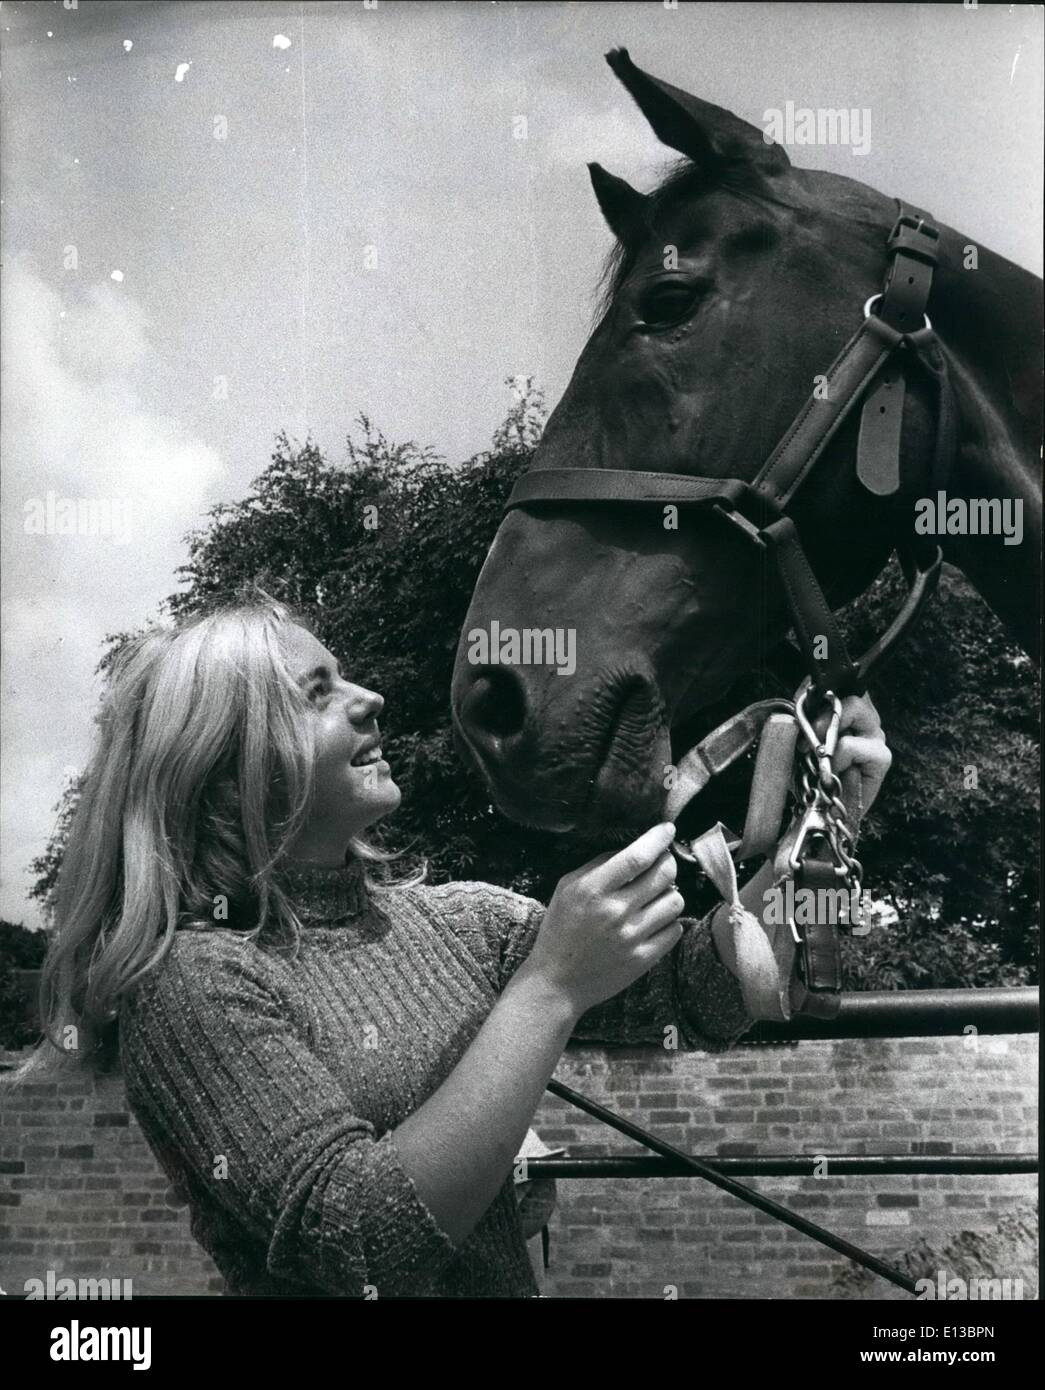 Febbraio 29, 2012 - Ann Moore nella foto con il Salmo, vincitore di una medaglia d oro acquisita per raccogliere il maggior numero di punti in quattro incontri a Hickstead durante il 1971 Show Jumping stagione. Foto Stock